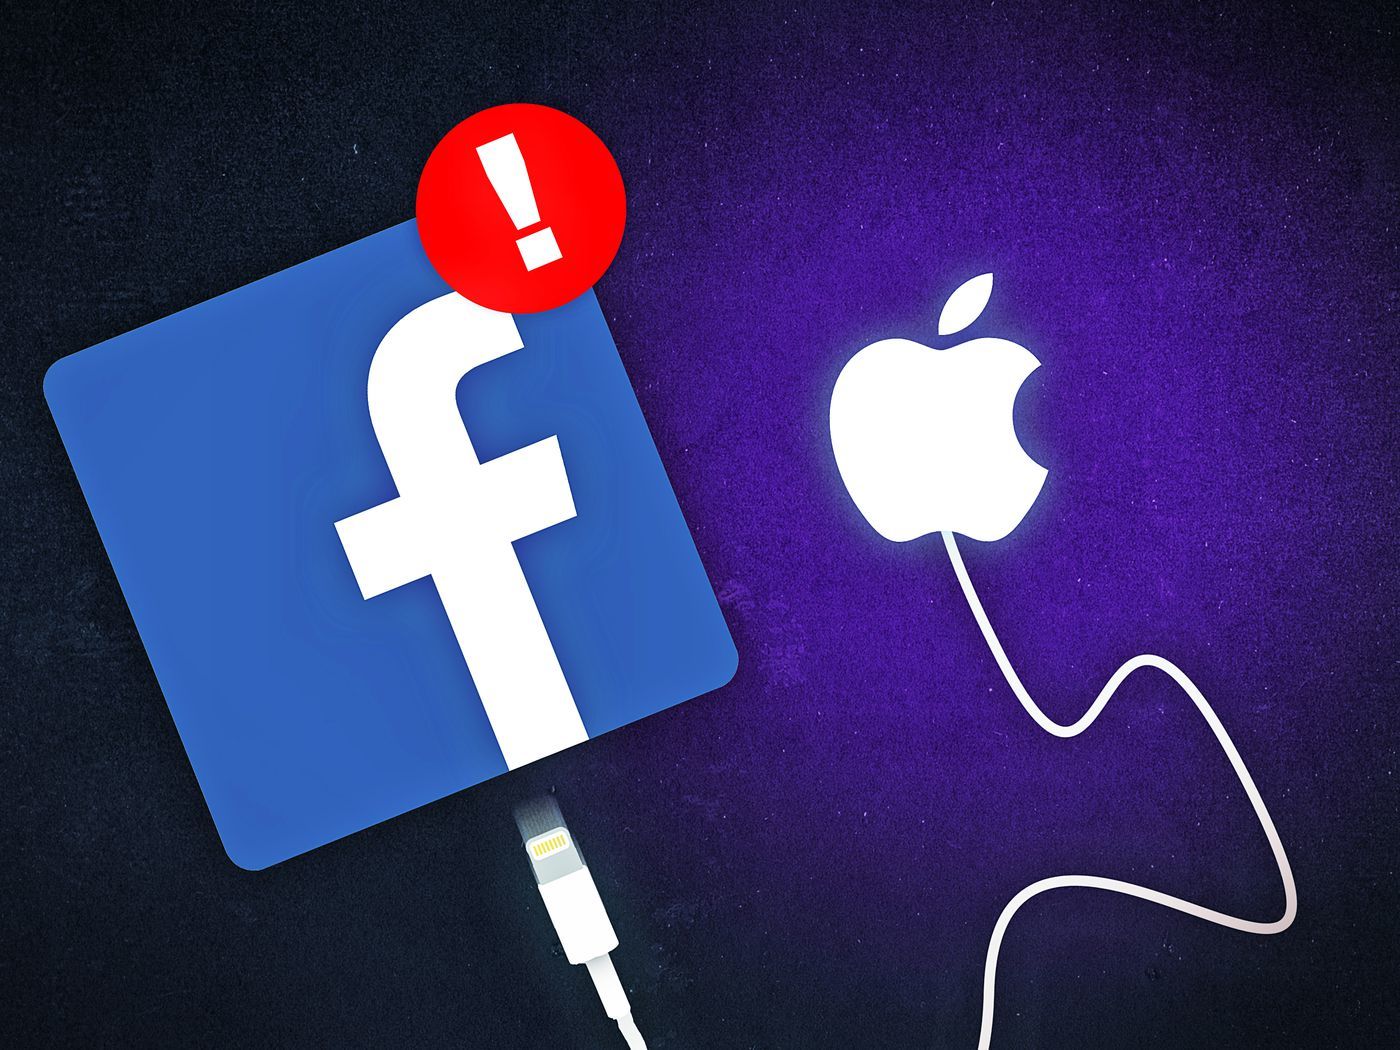 Cuộc chiến thập kỷ giữa Apple và Facebook